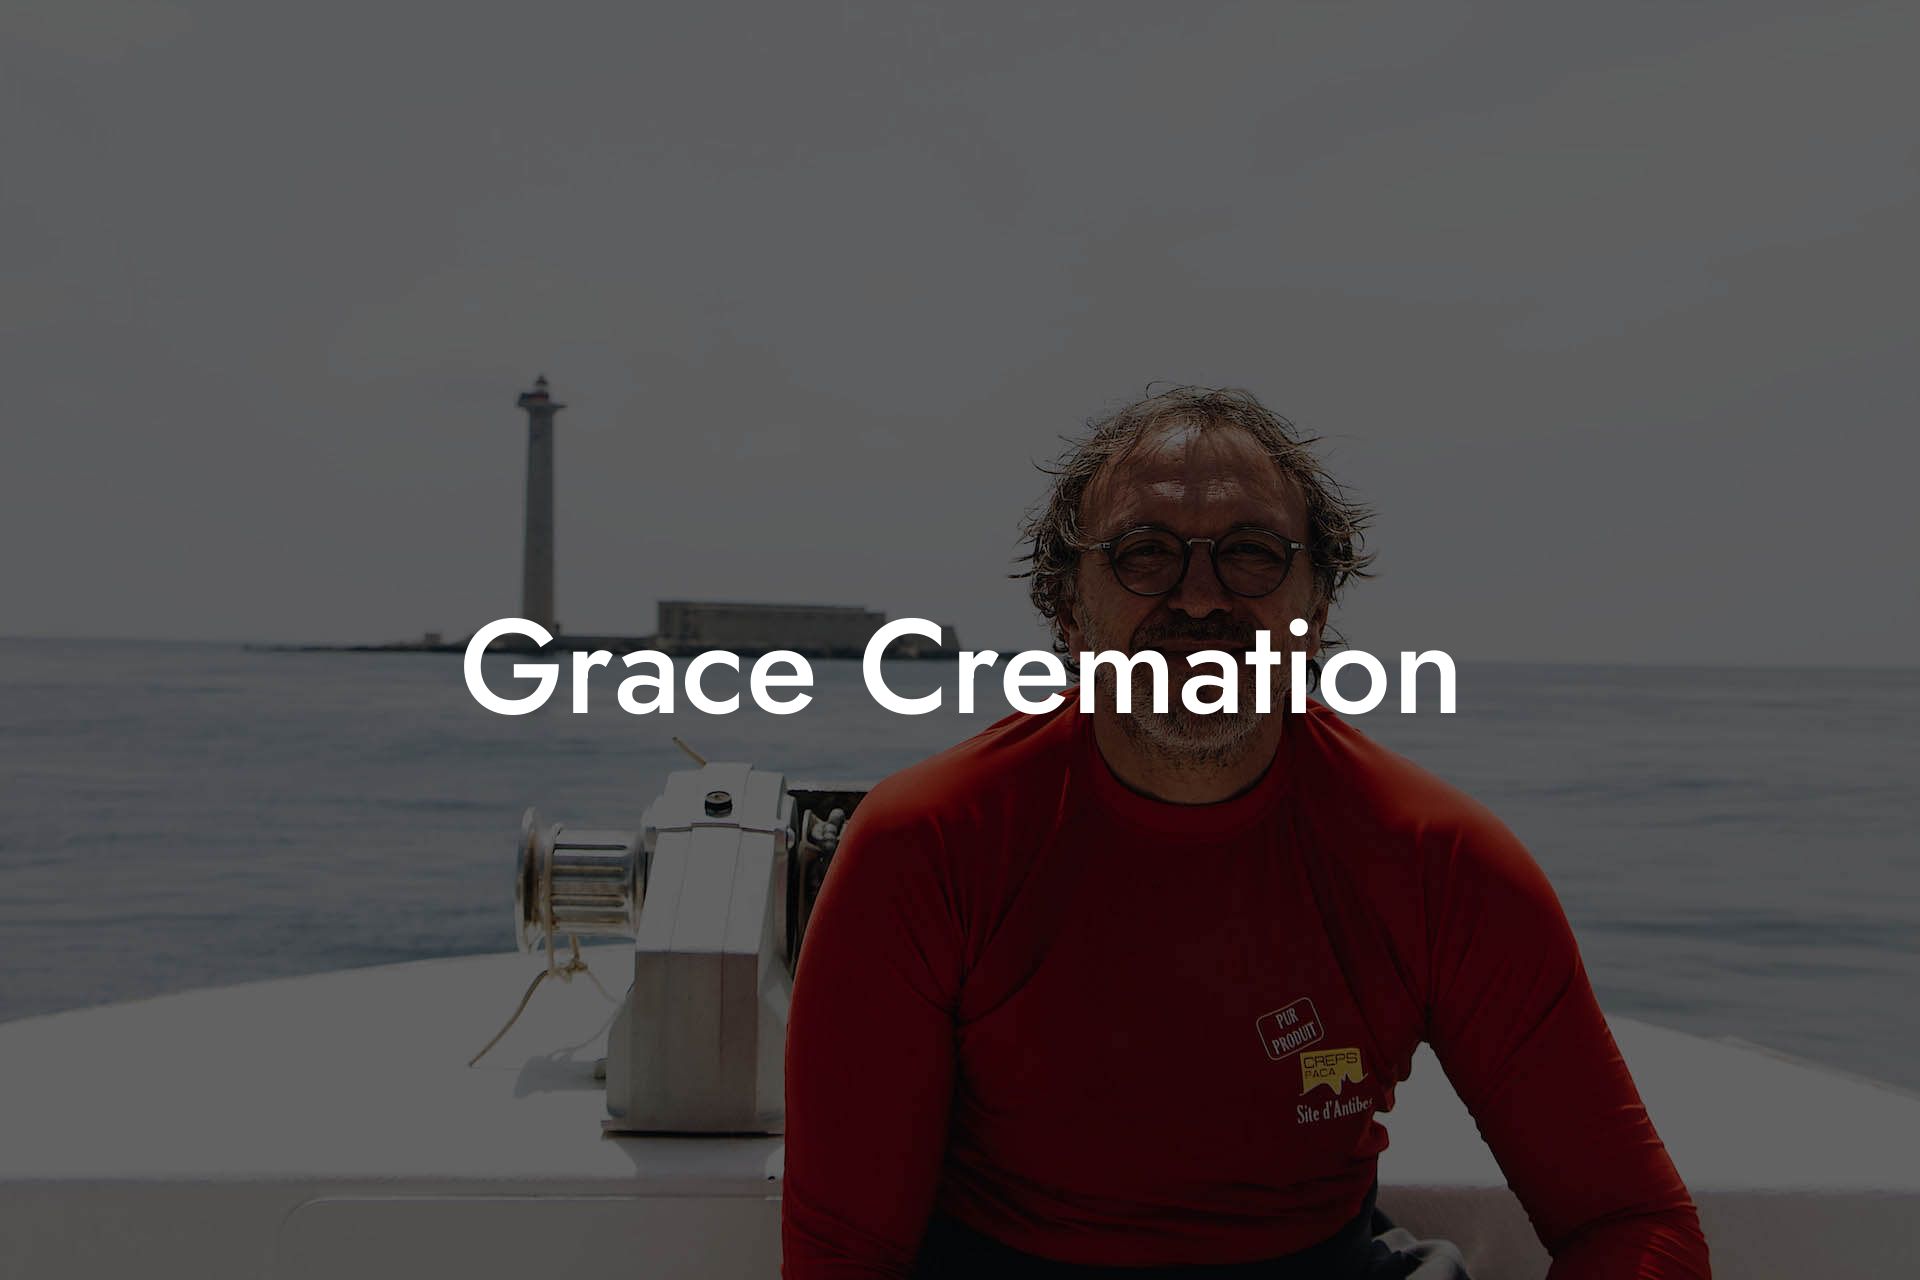 Grace Cremation